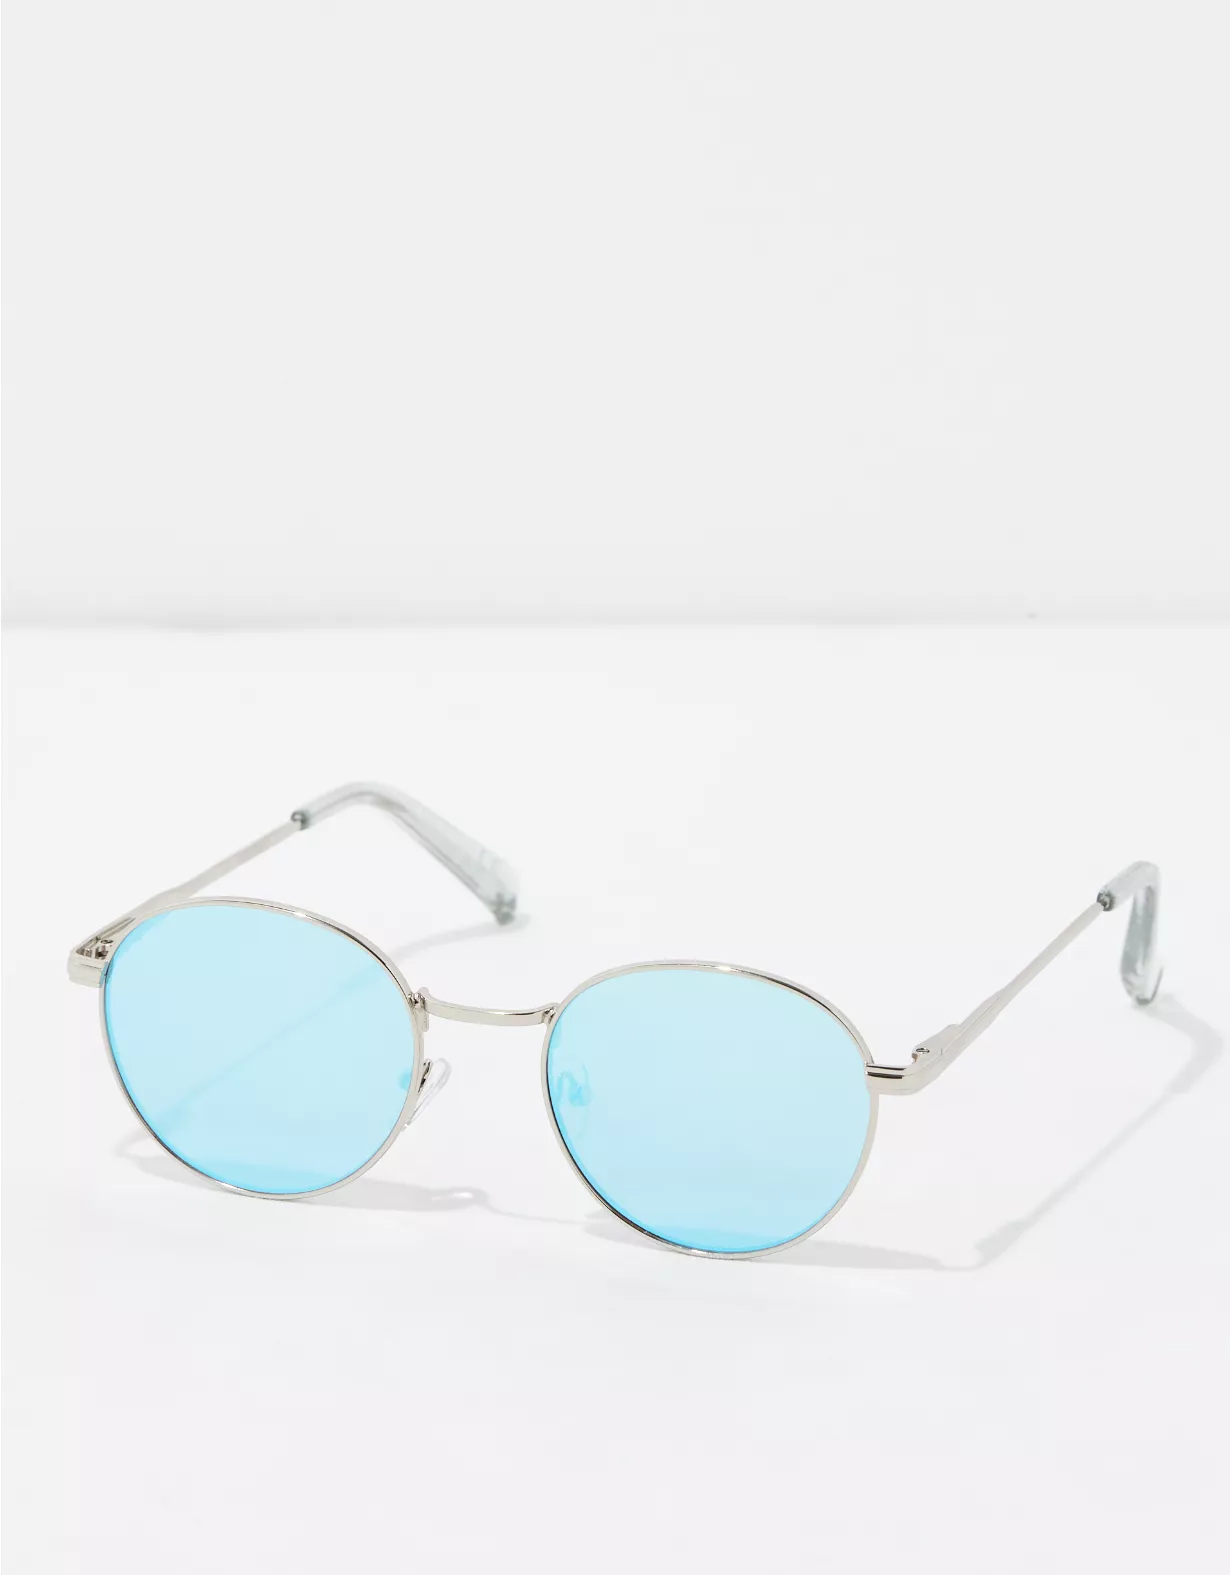 AE Silver Round Sunglasses